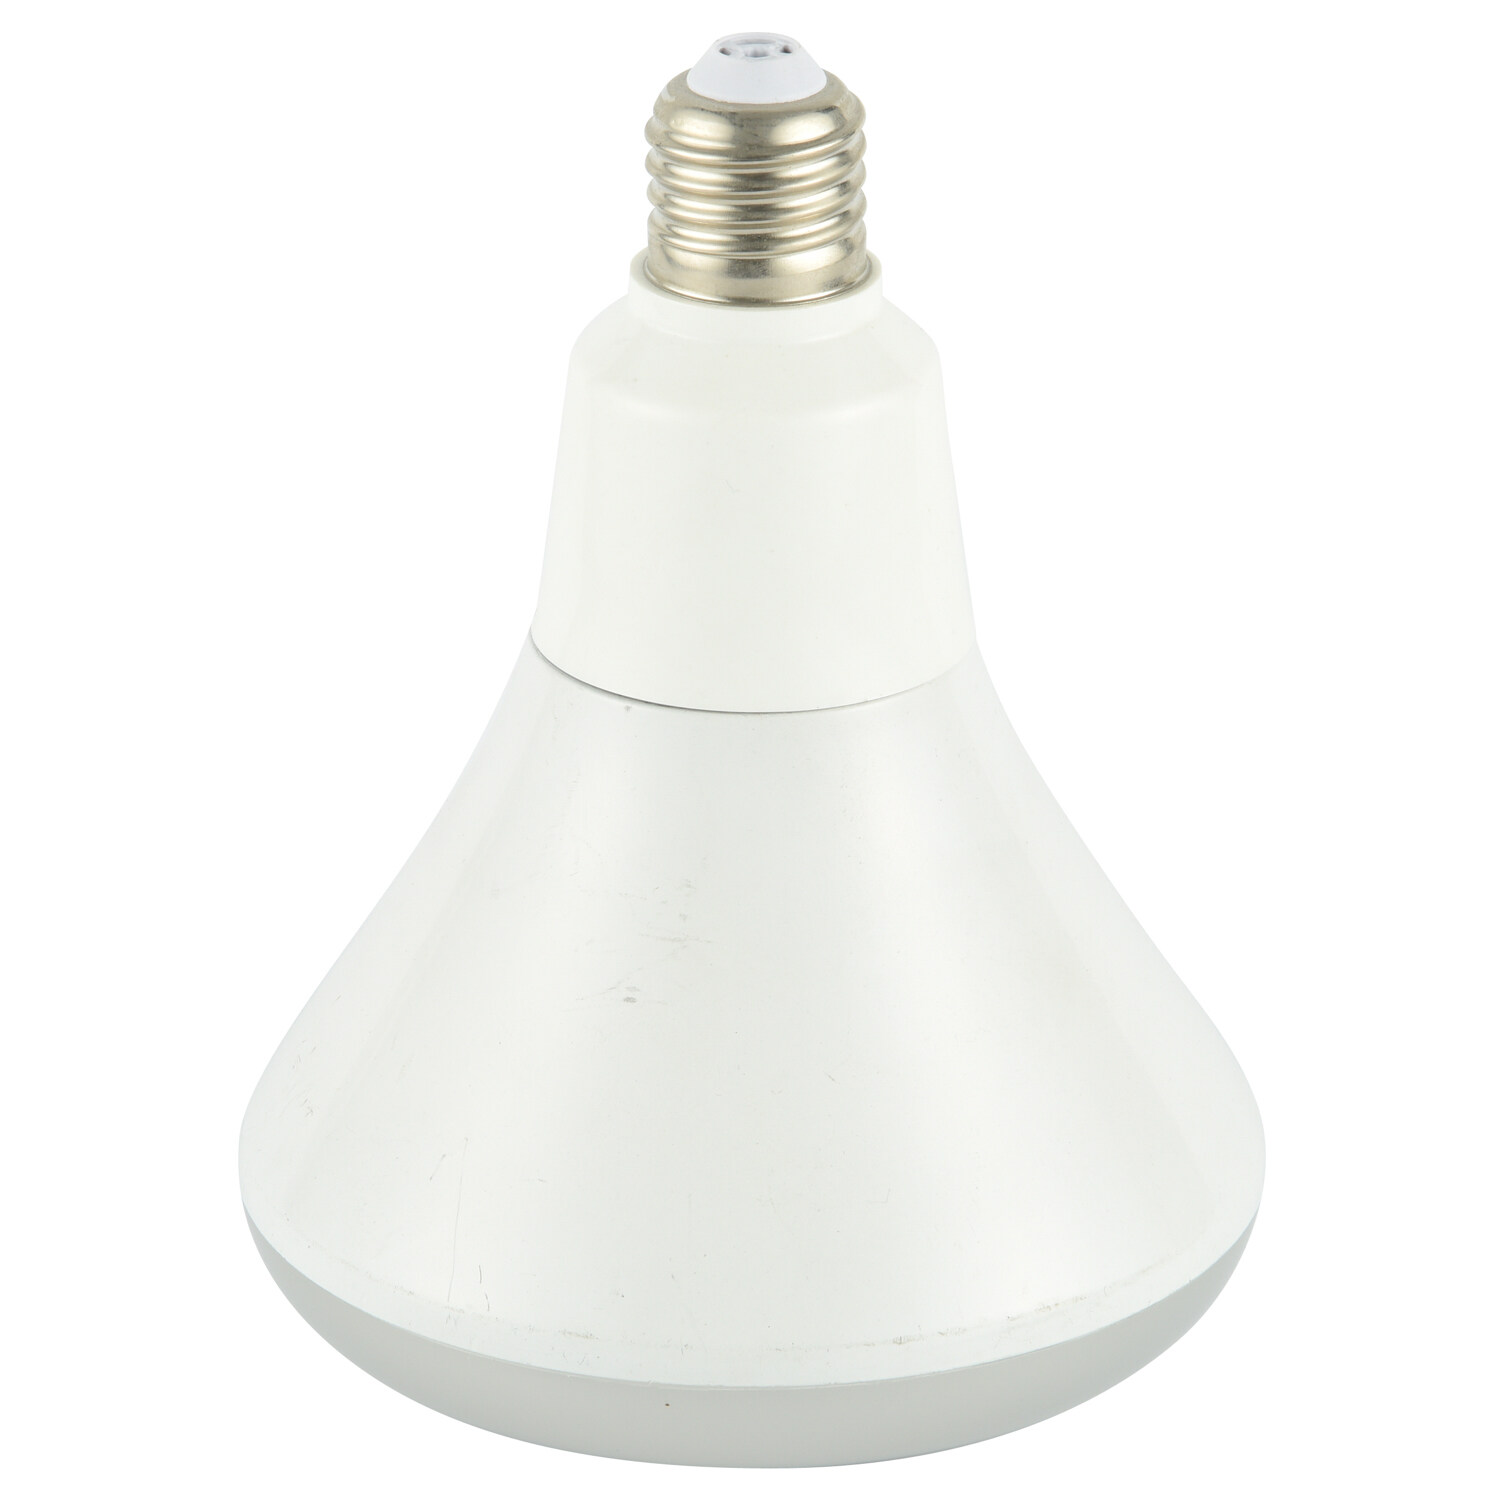 LED bulb holder